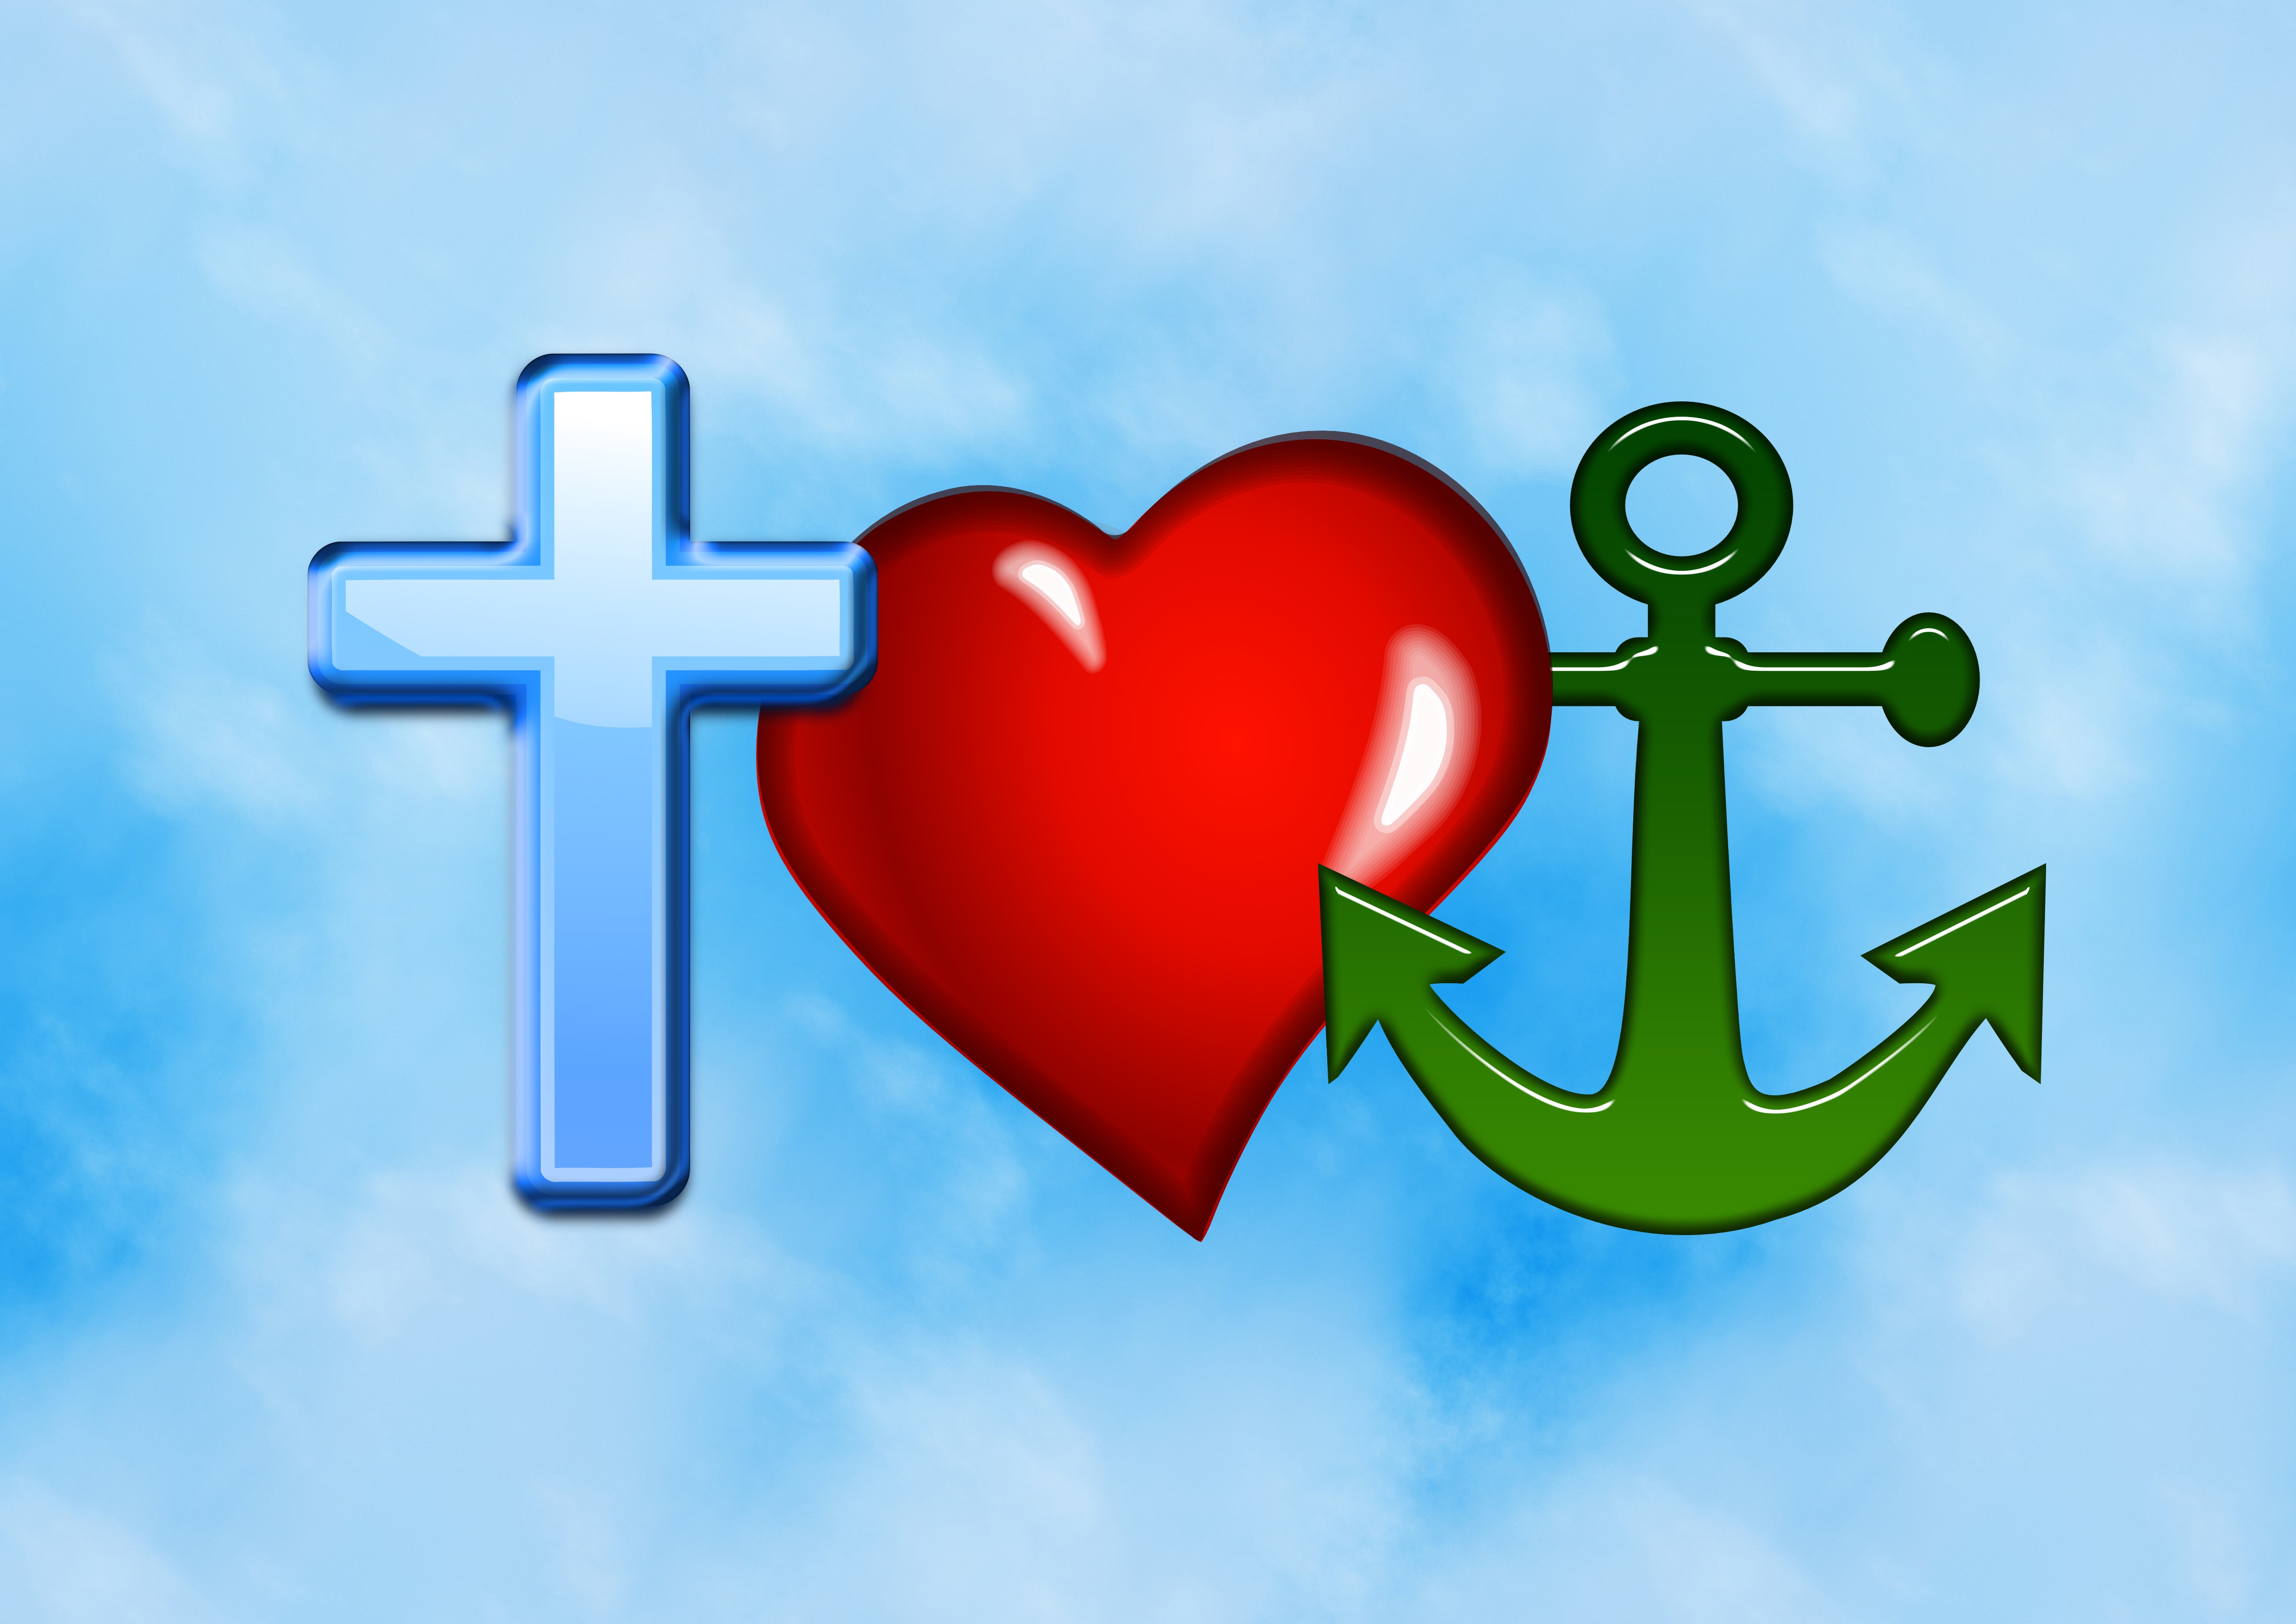 Вера Надежда любовь крест якорь сердце